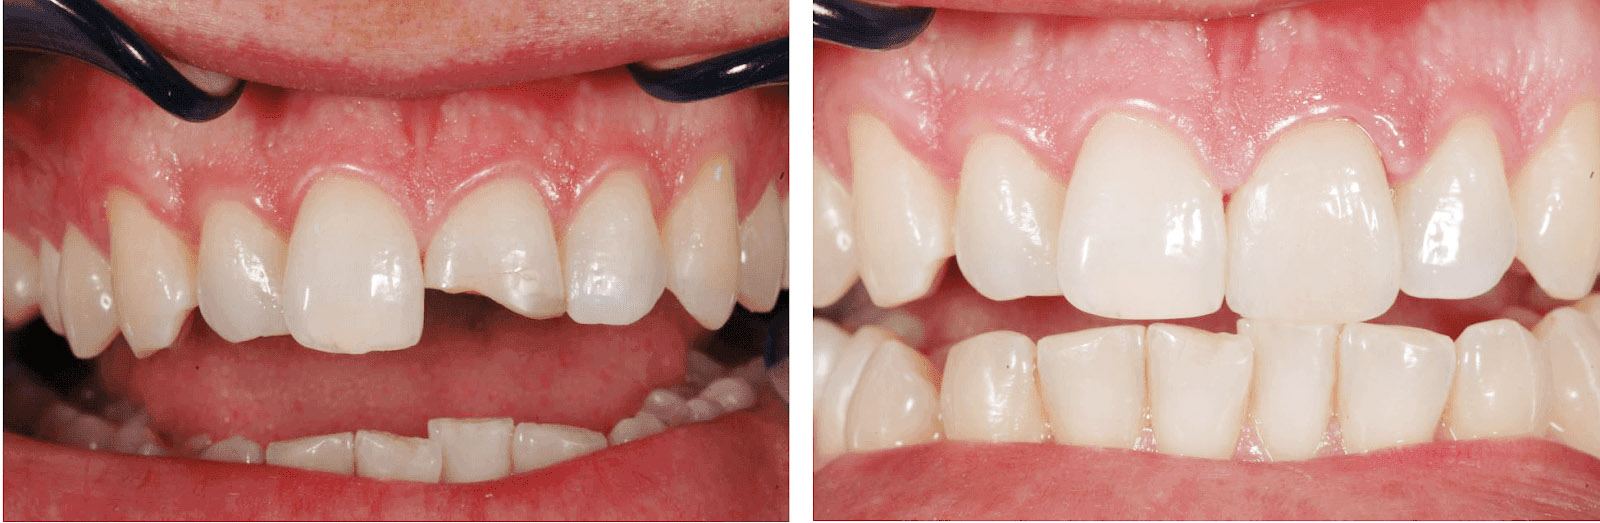 Фото: устаревшую процедуру эстетической стоматологии бондинг уже почти не делают